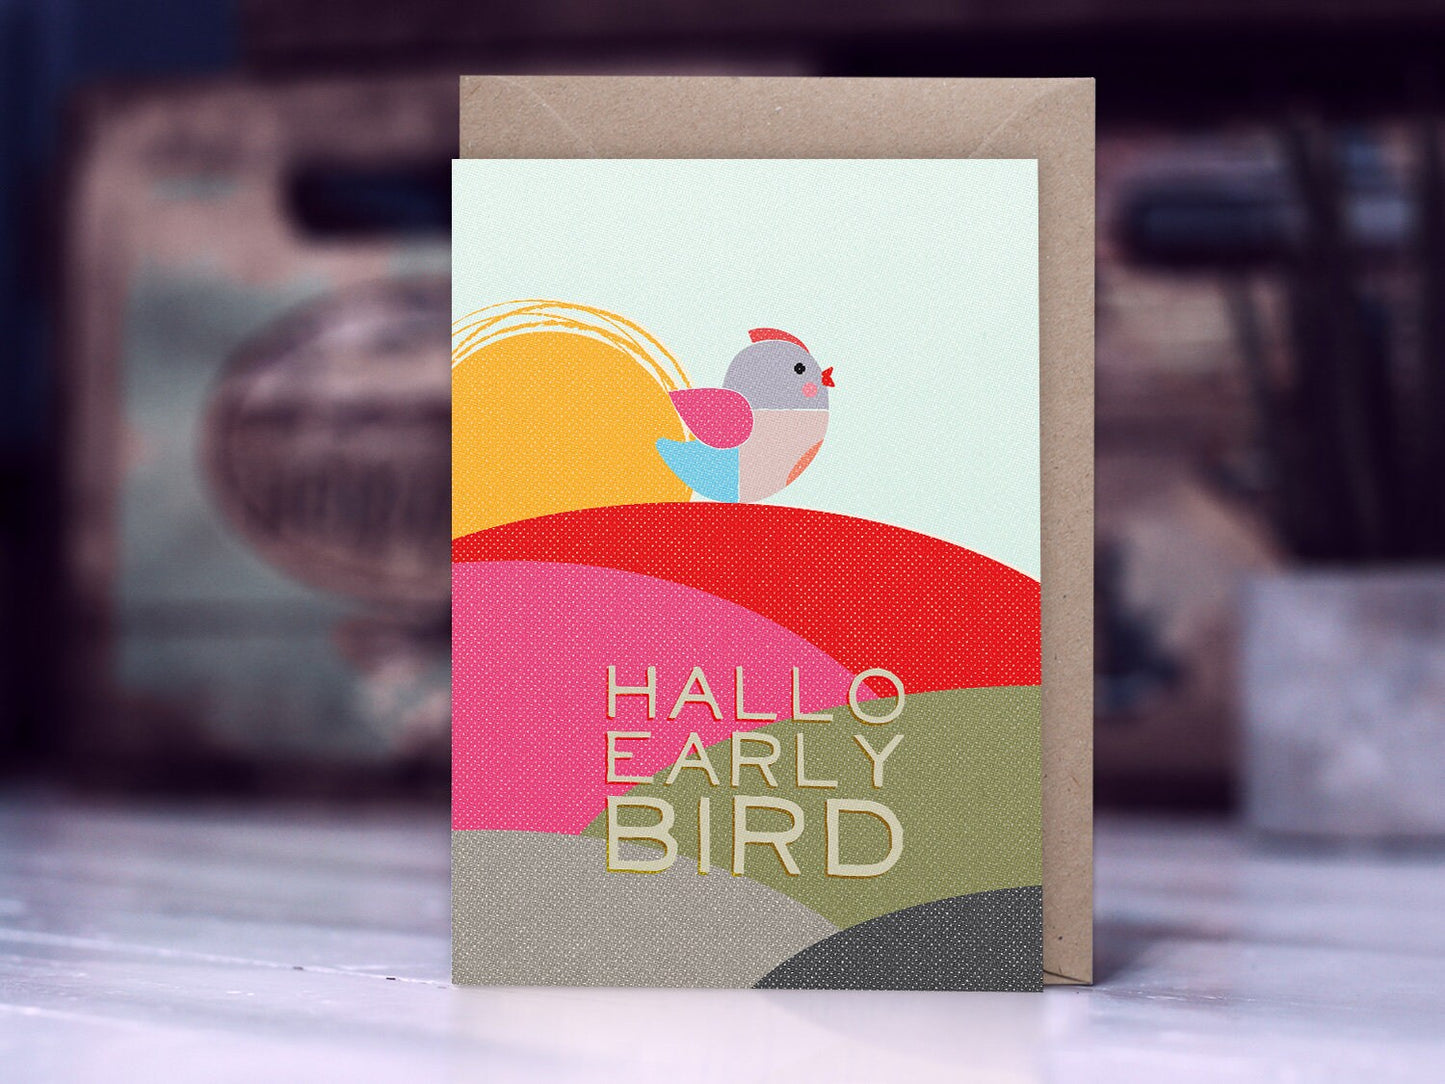 Klappkarte ›Hallo Early Bird‹ / Karte, Grusskarte, Liebe, Gruß, Geburt, Geburtstag, Baby, Taufe, Vogel, Sonne, Bunt, hello little one